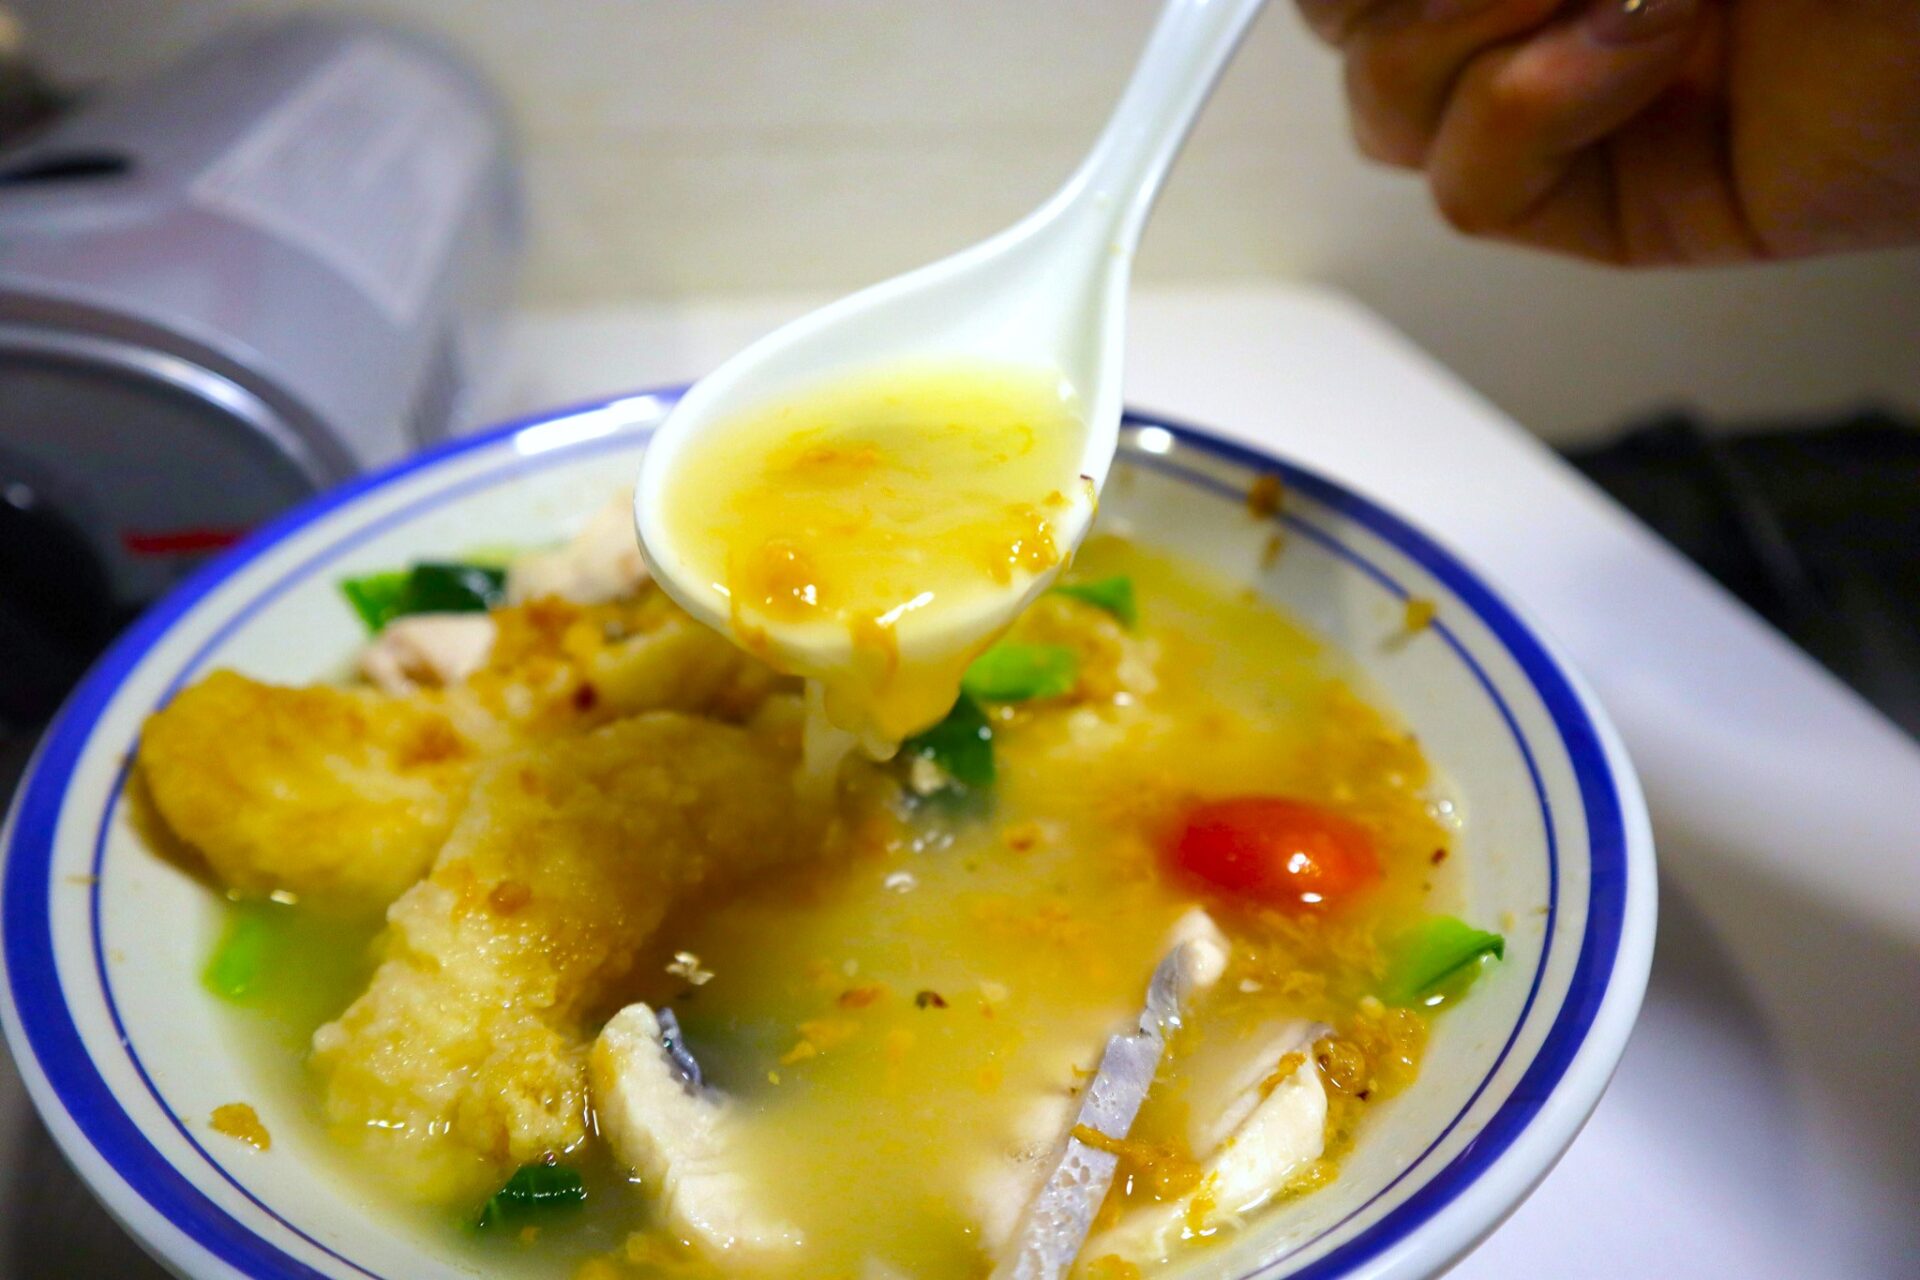 fish soup paradise - soup closeup